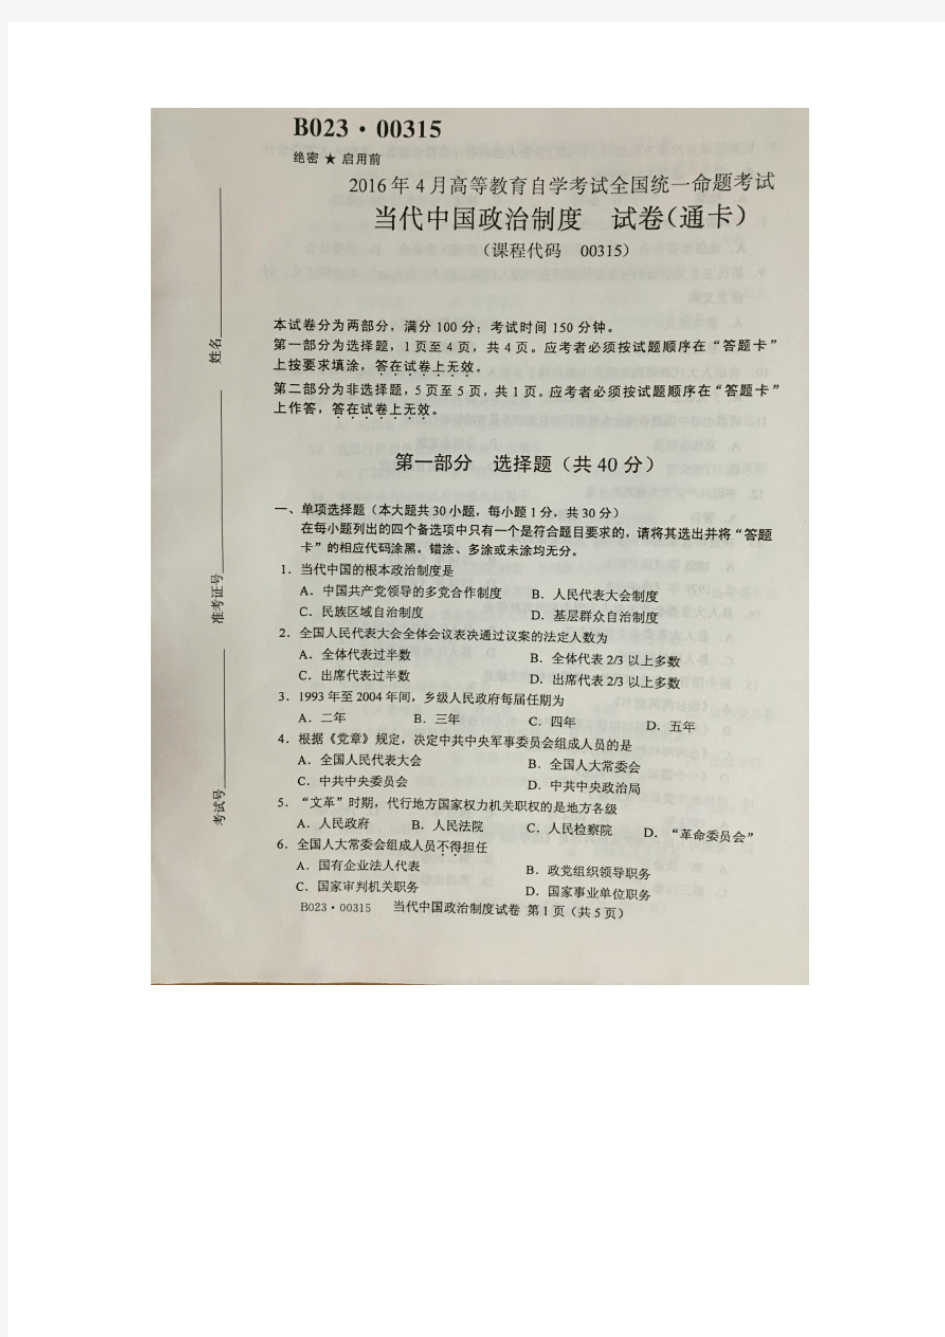 2016年4月自学考试当代中国政治制度00315试卷及答案解释完整版